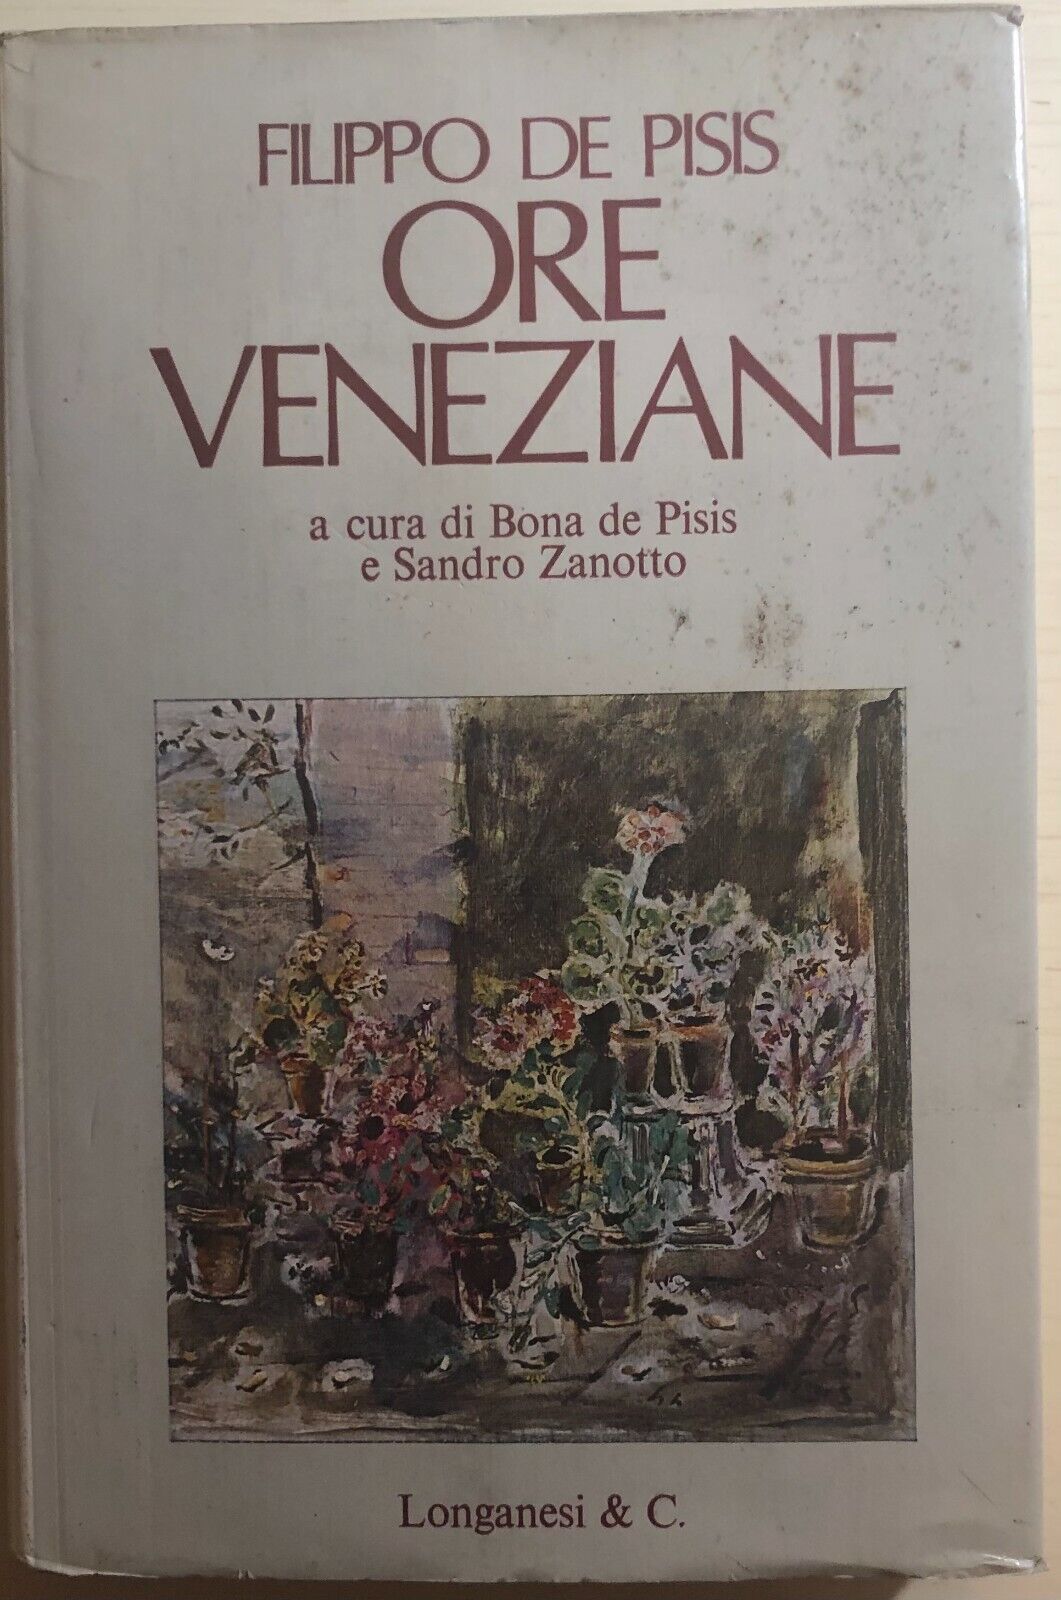 Ore veneziane di Filippo De Pisis,  1974,  Longanesi E C.